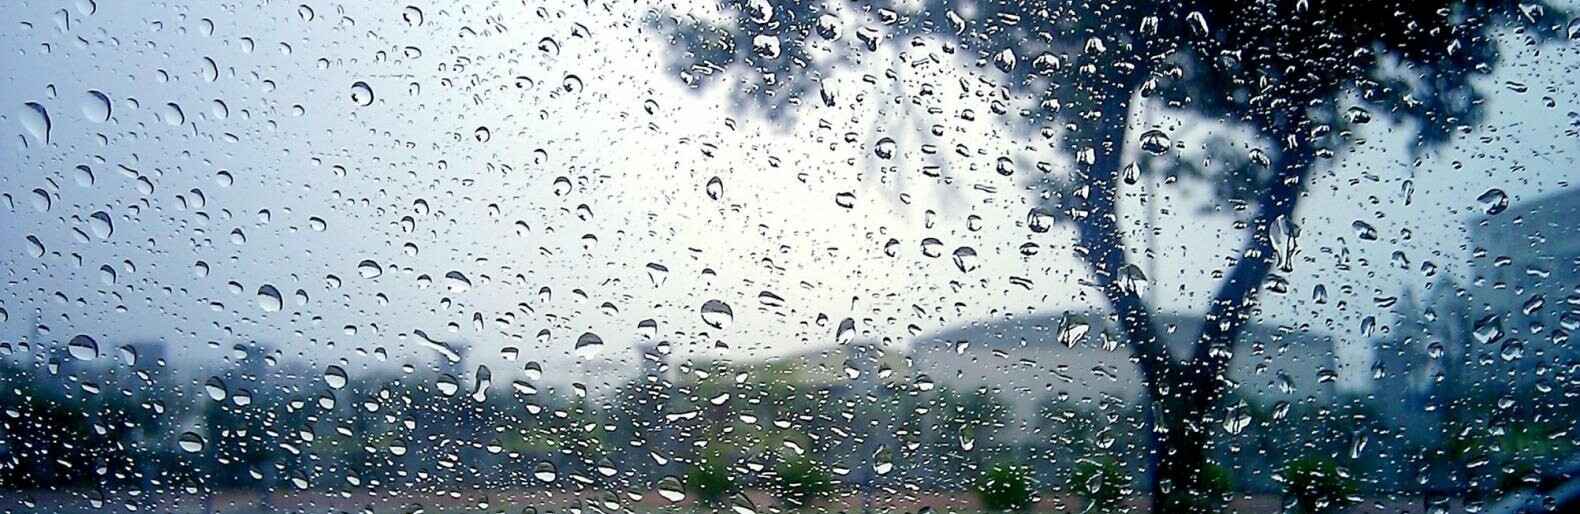 В среду погода в Кривом Роге ухудшится: будет дождливо, ожидаются грозы ...
 Дождливо